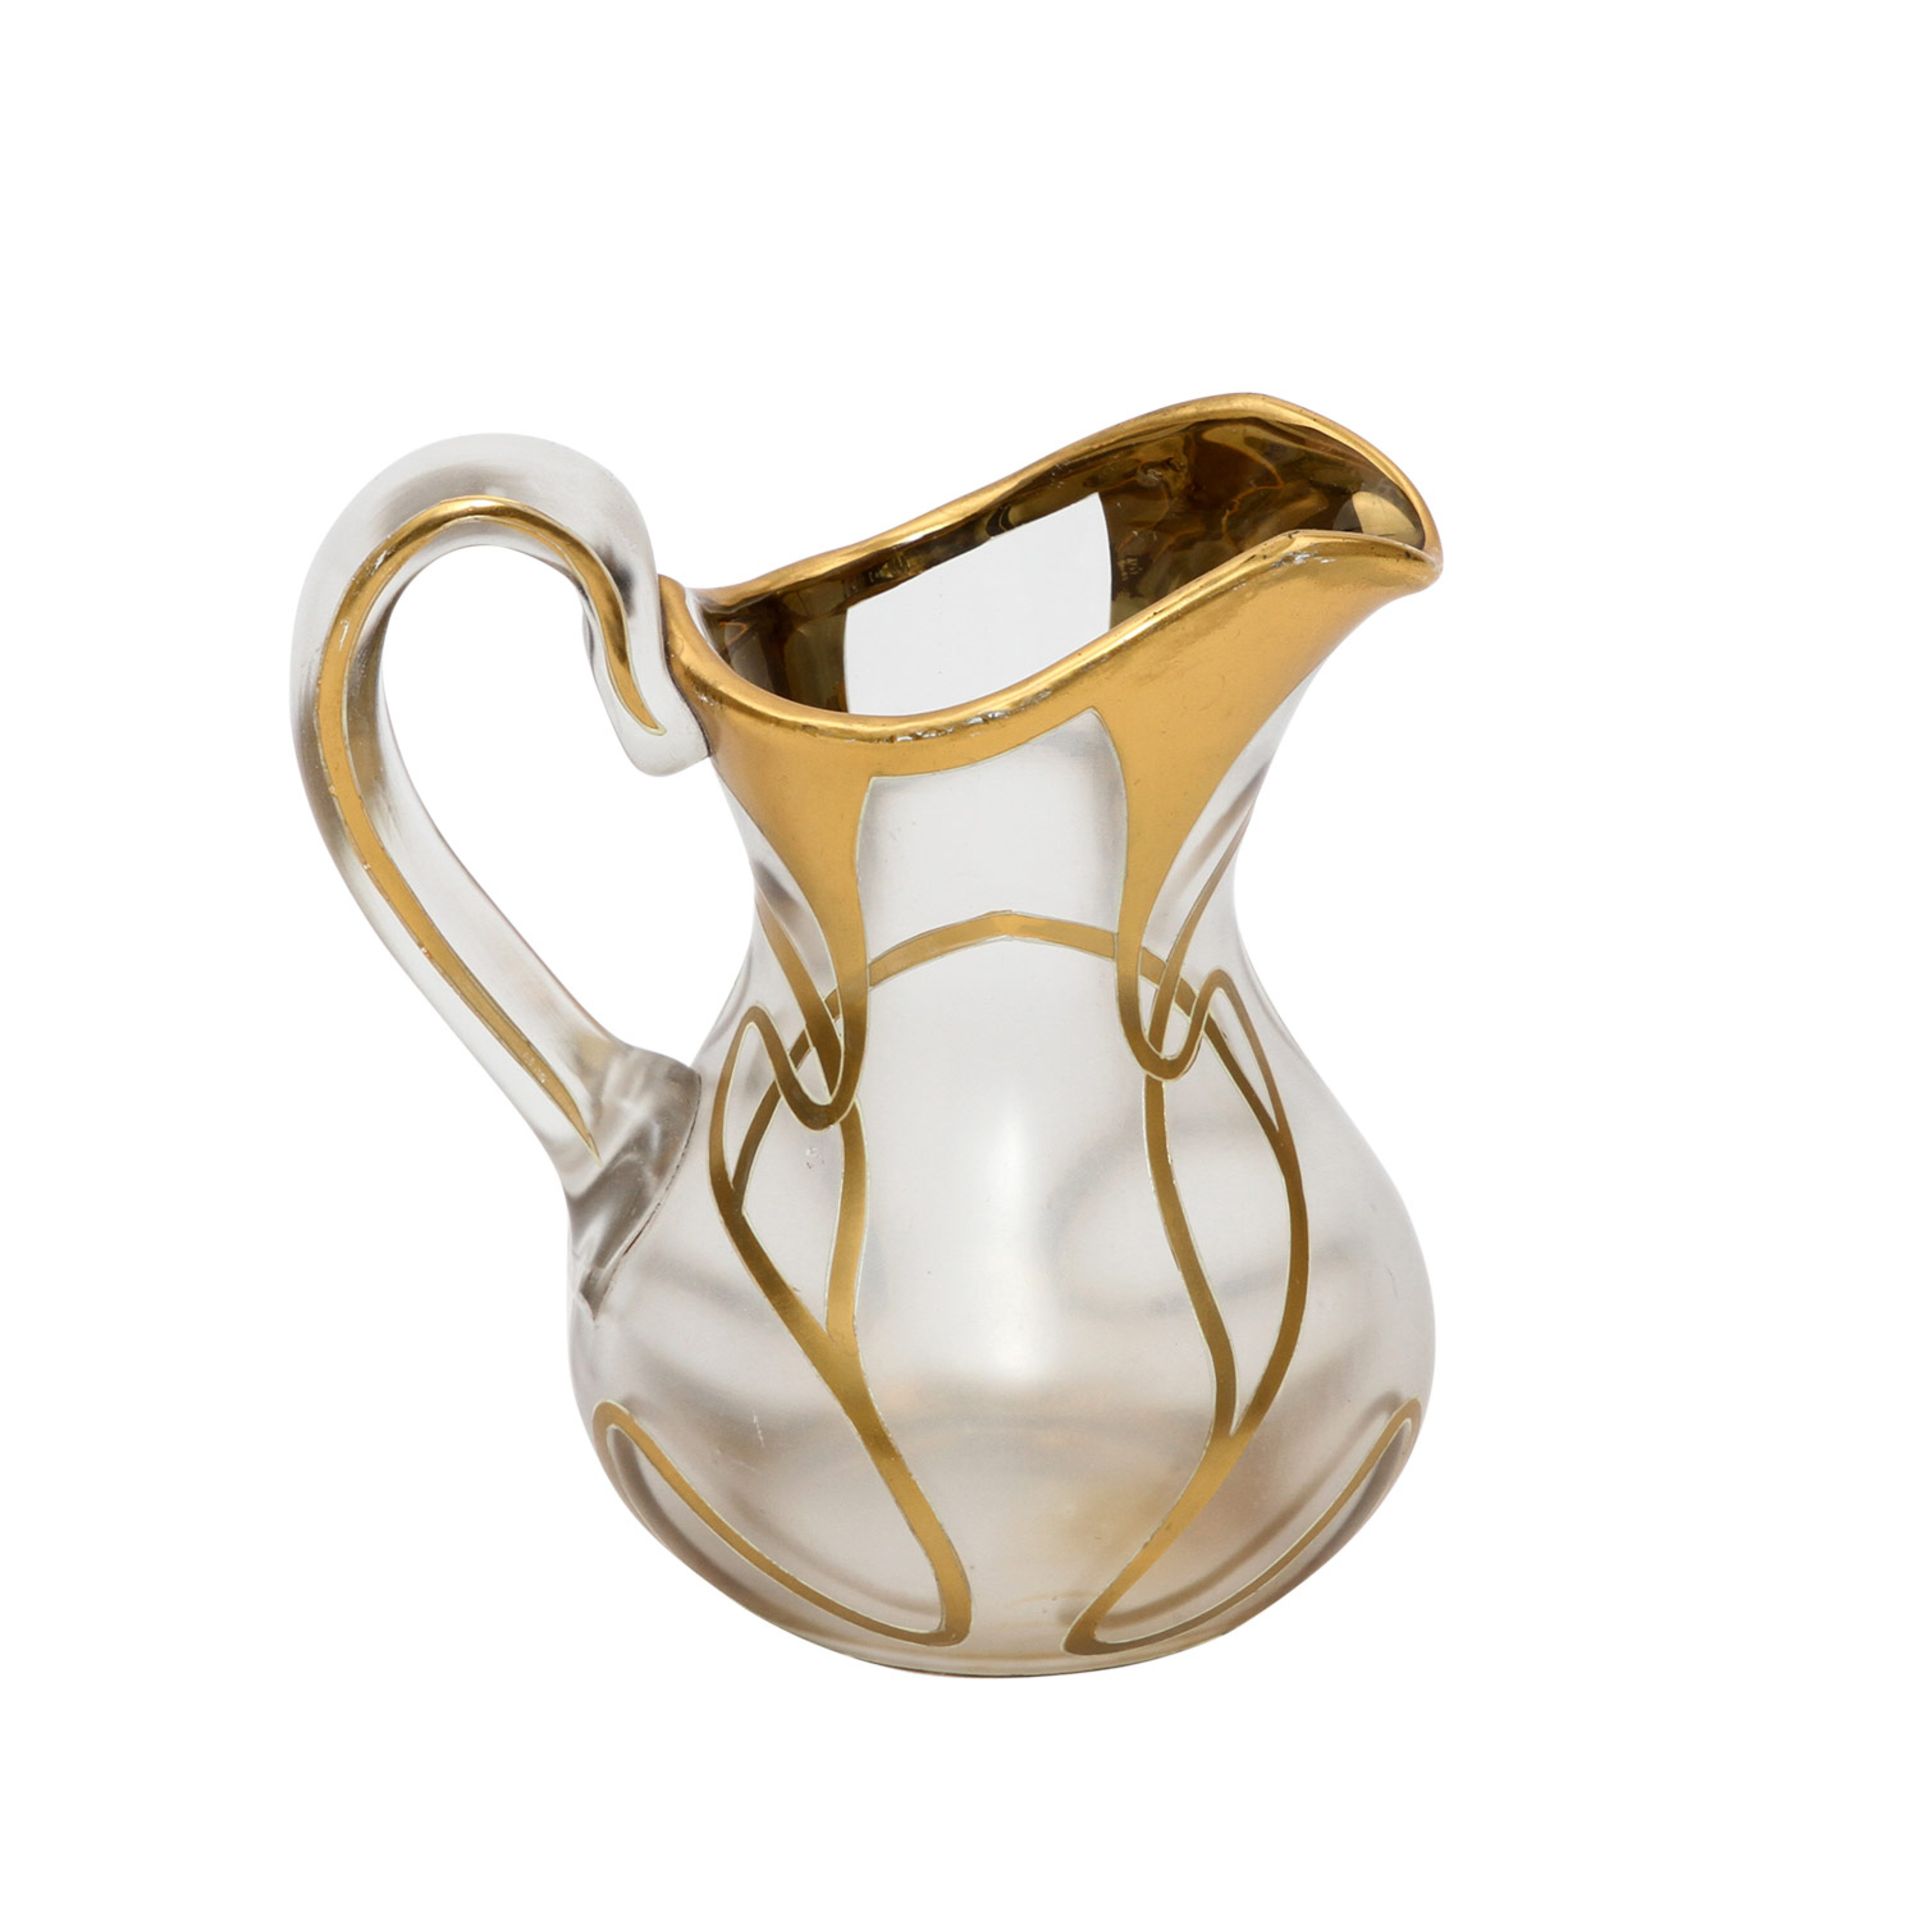 JUGENDSTIL-GLASKRUG Um 1900, Glaskrug mit Golddekor, H: 12 cm. Min. Gebrauchsspuren. - Image 5 of 6